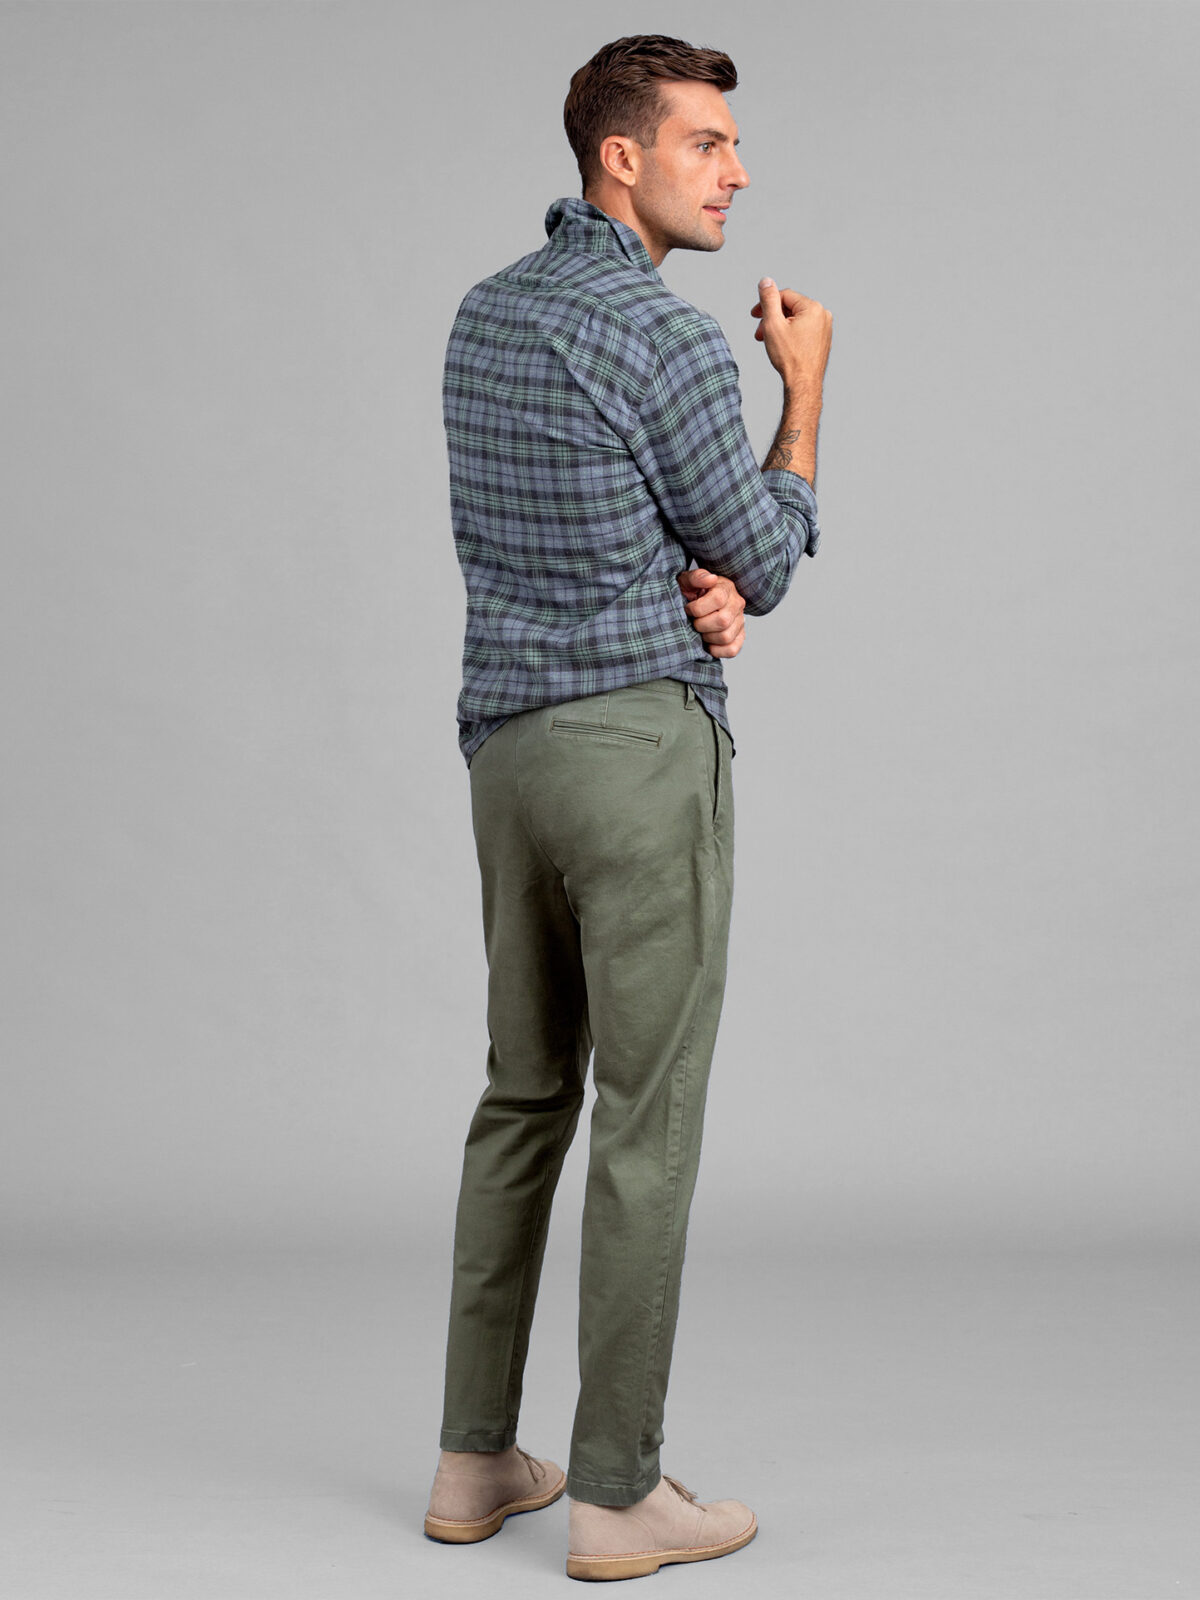 Men's Pants - Chino Pants & Casual Pants - Express